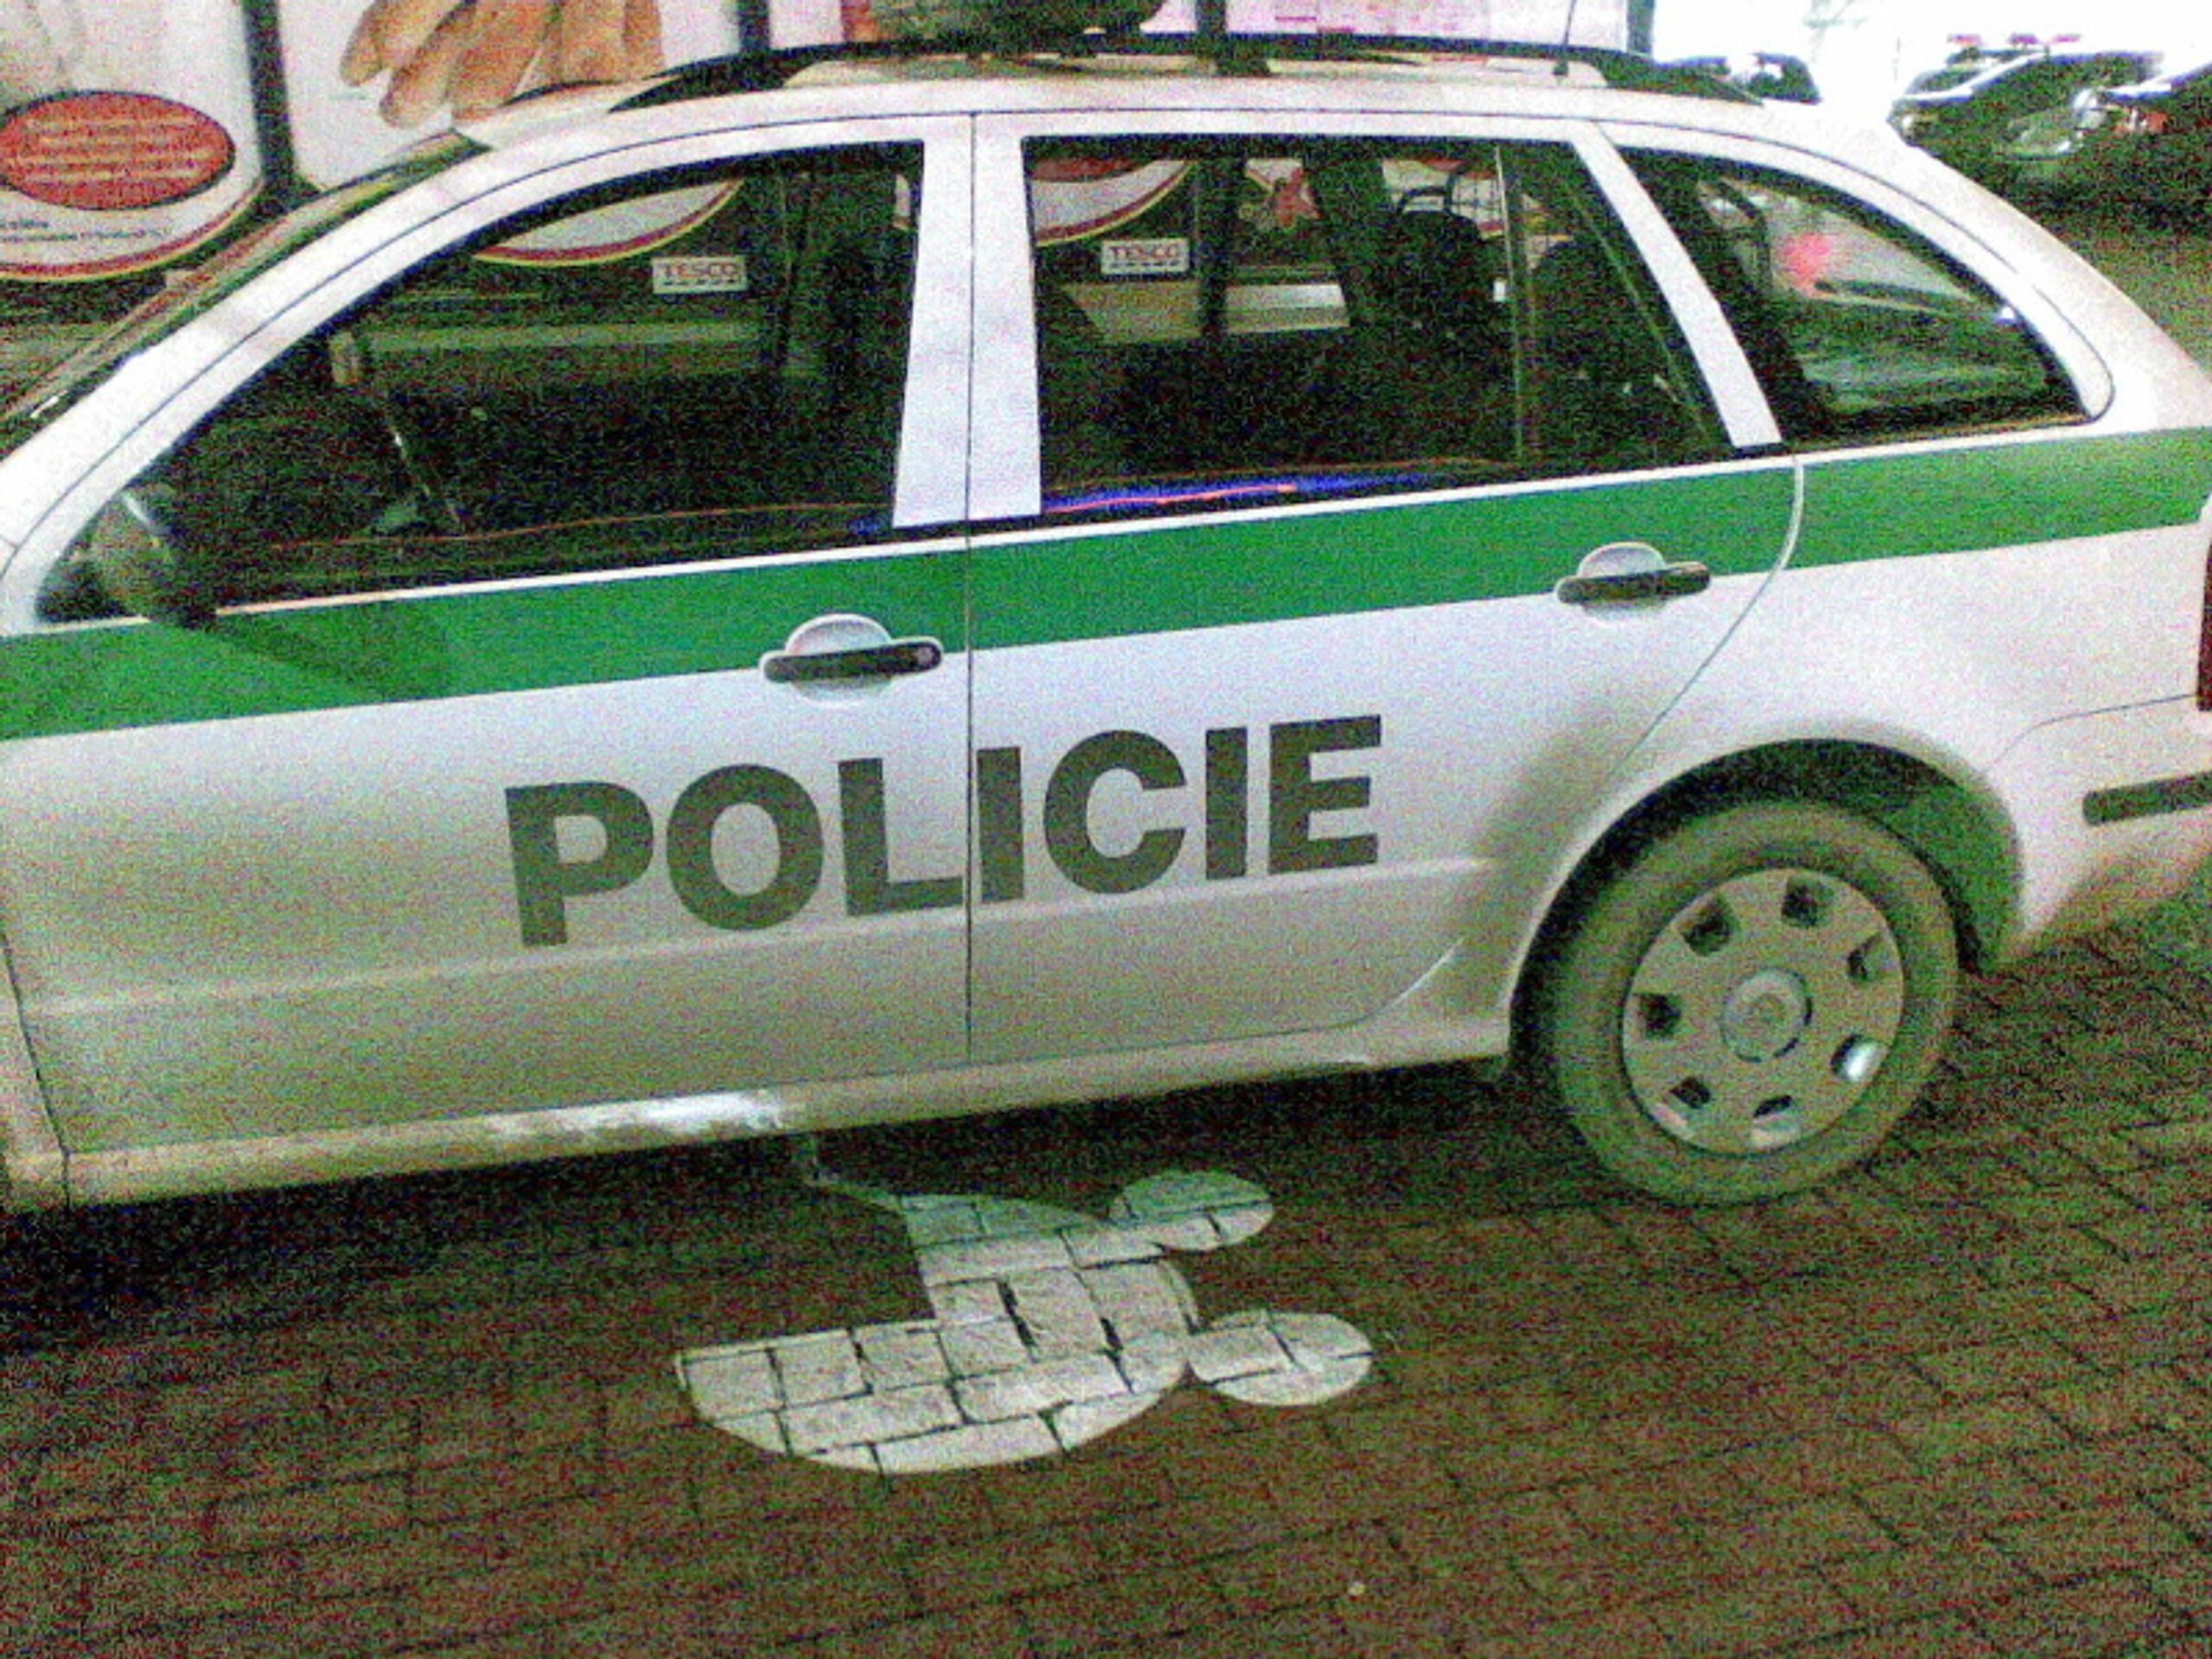 Policejní auta porušující zákon - Galerie přestupků policistů (26/30)